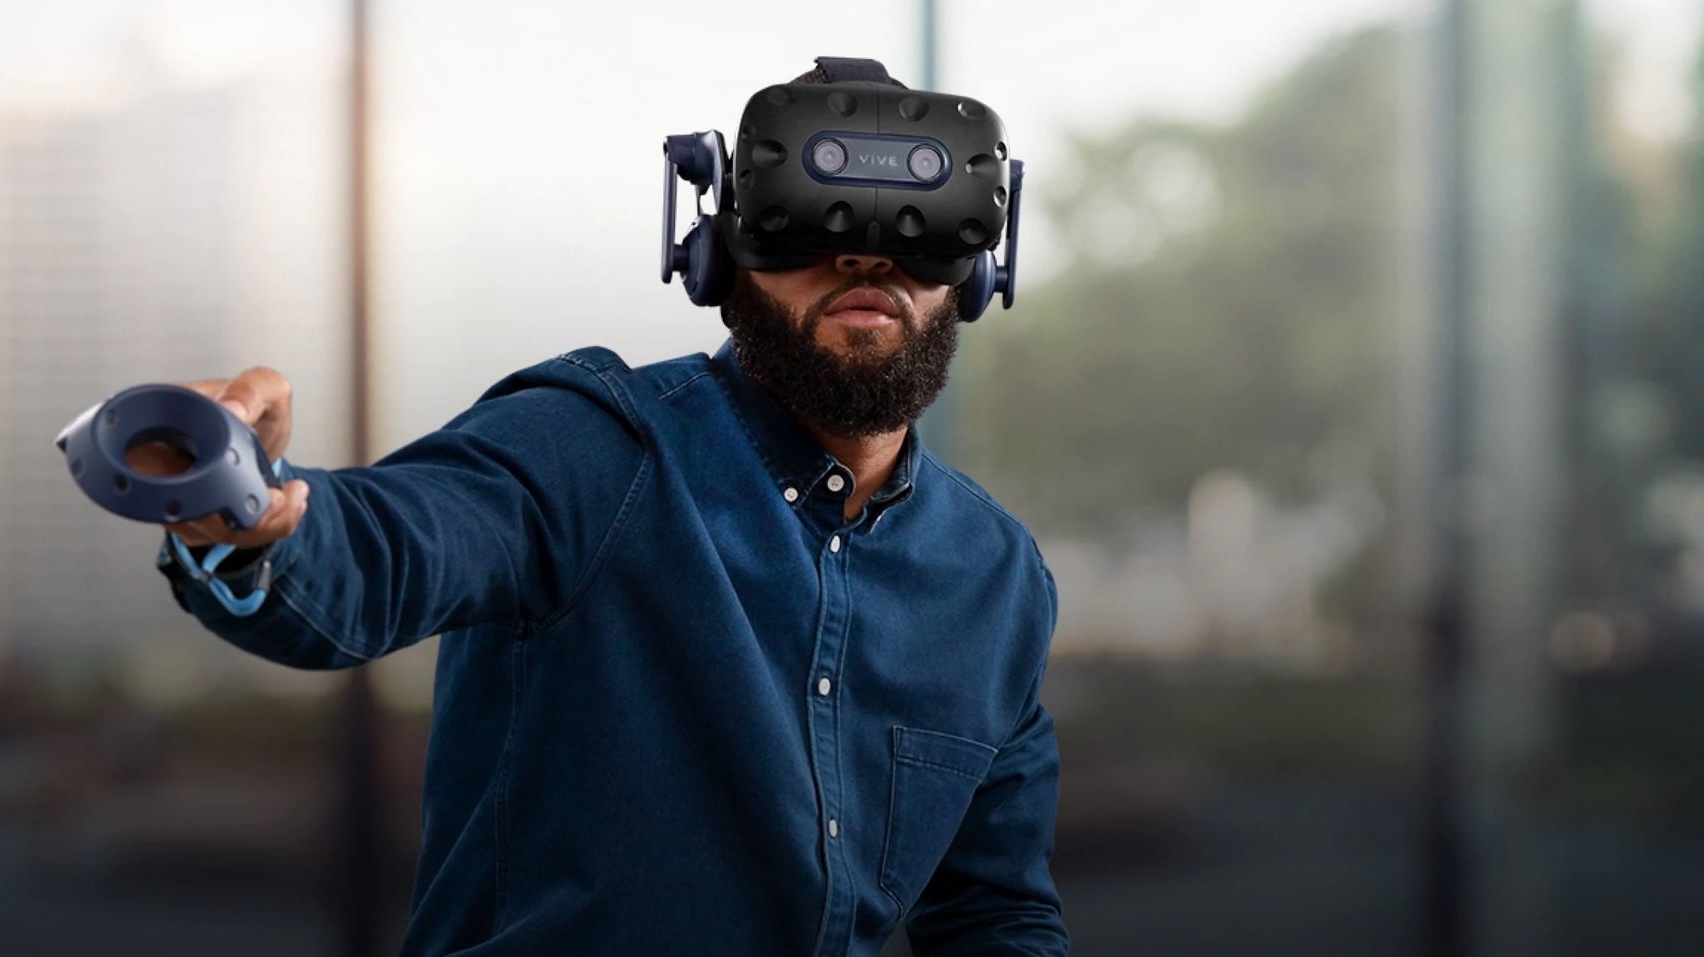 Vive Pro 2: Highend-VR-Brille mit hoher Auflösung und 120 Hertz | heise  online